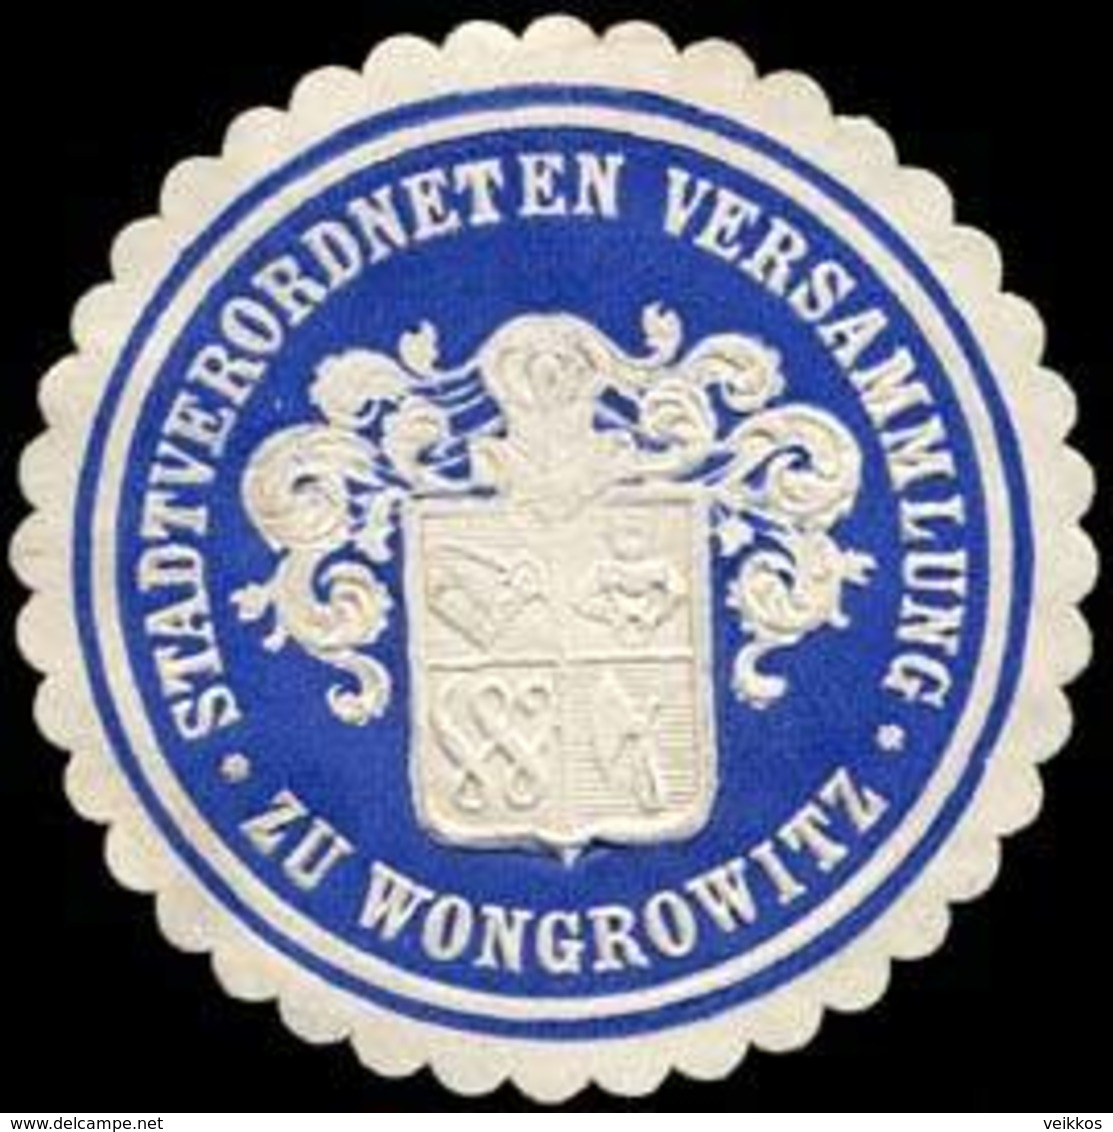 Wongrowitz: Stadtverordneten Versammlung Zu Wongrowitz Siegelmarke - Cinderellas